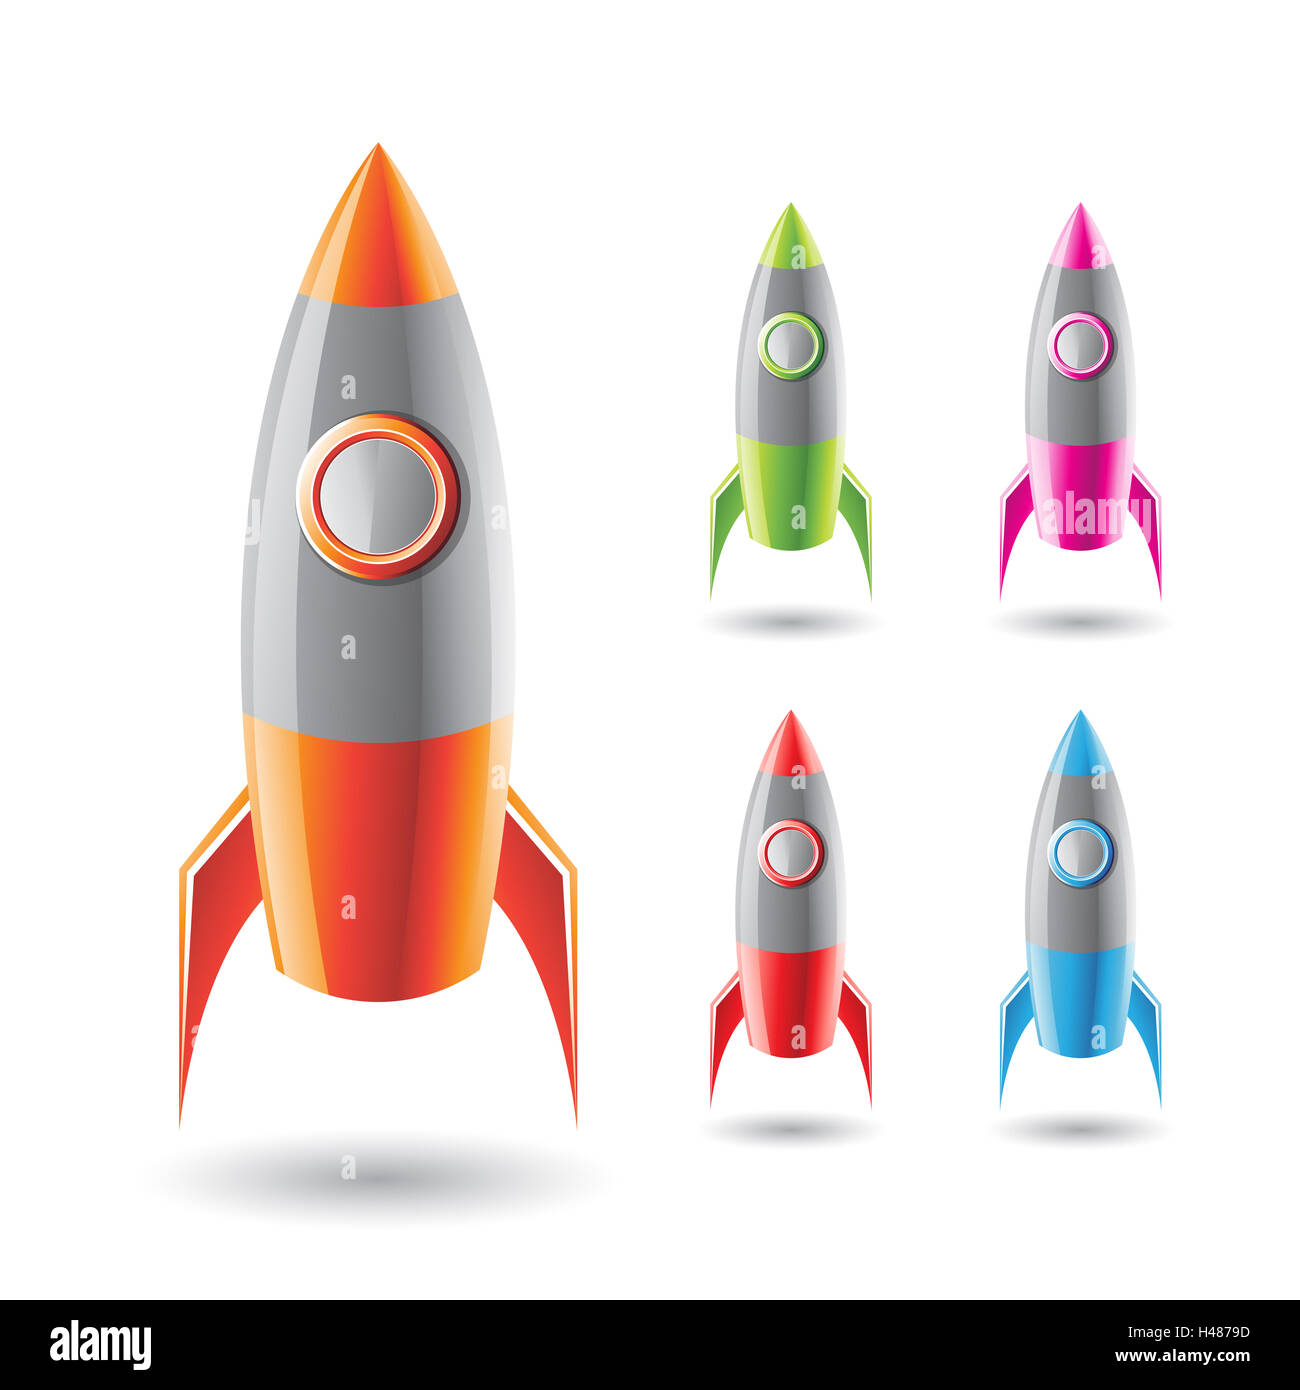 Ilustración vectorial de coloridos cohetes con cuerpo gris aislado sobre un fondo blanco. Foto de stock